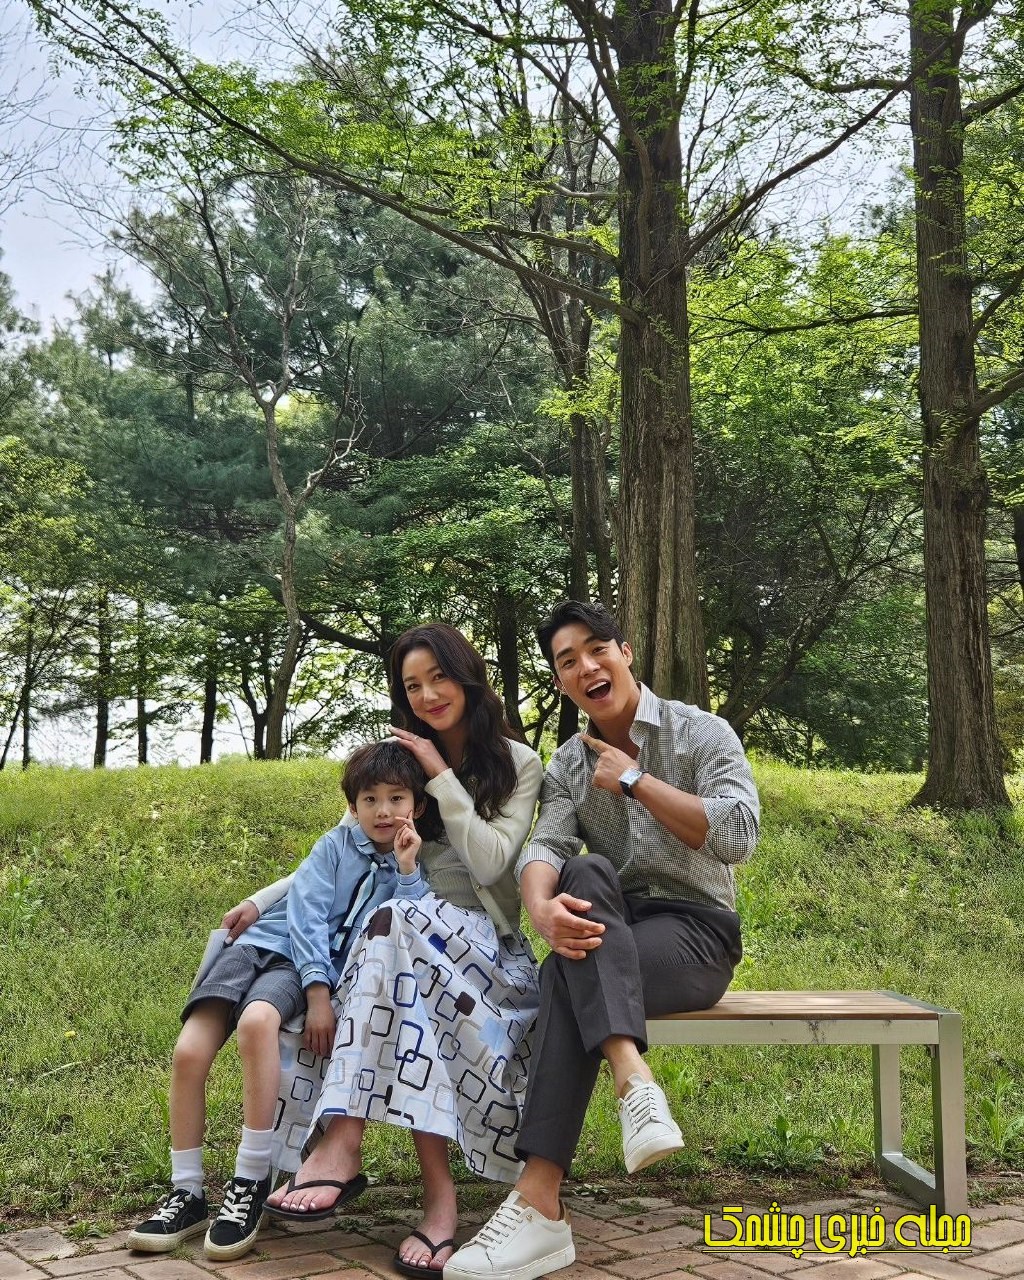 بانو جانگ به همراه پسر واقعی اش+عکس و بیوگرافی